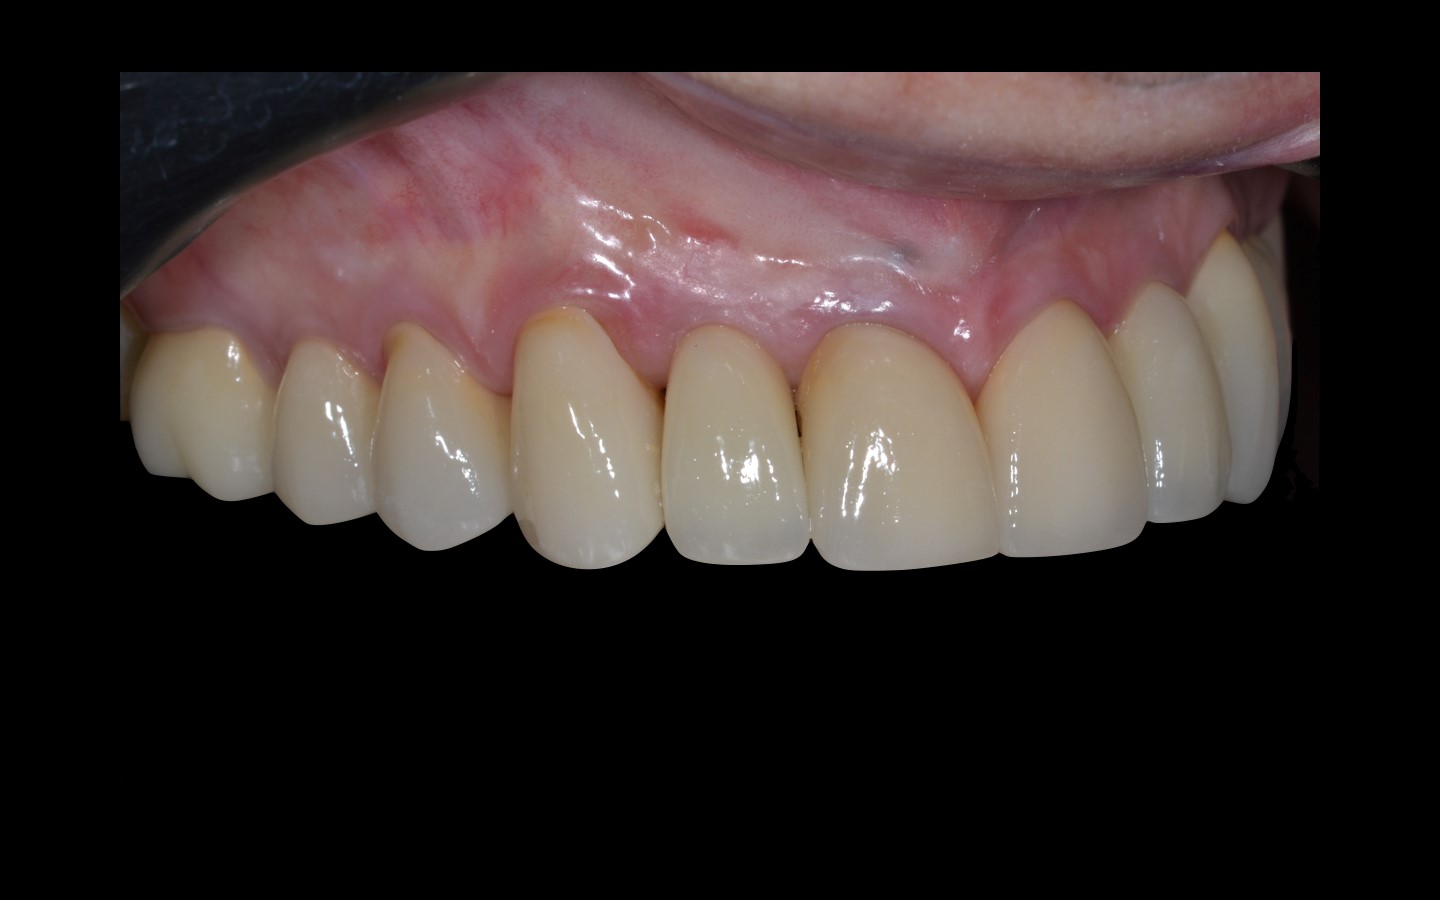 image24 - Reabilitação dento-alveolar com implante Arcsys, enxerto conjuntivo e substituto ósseo Nanosynt